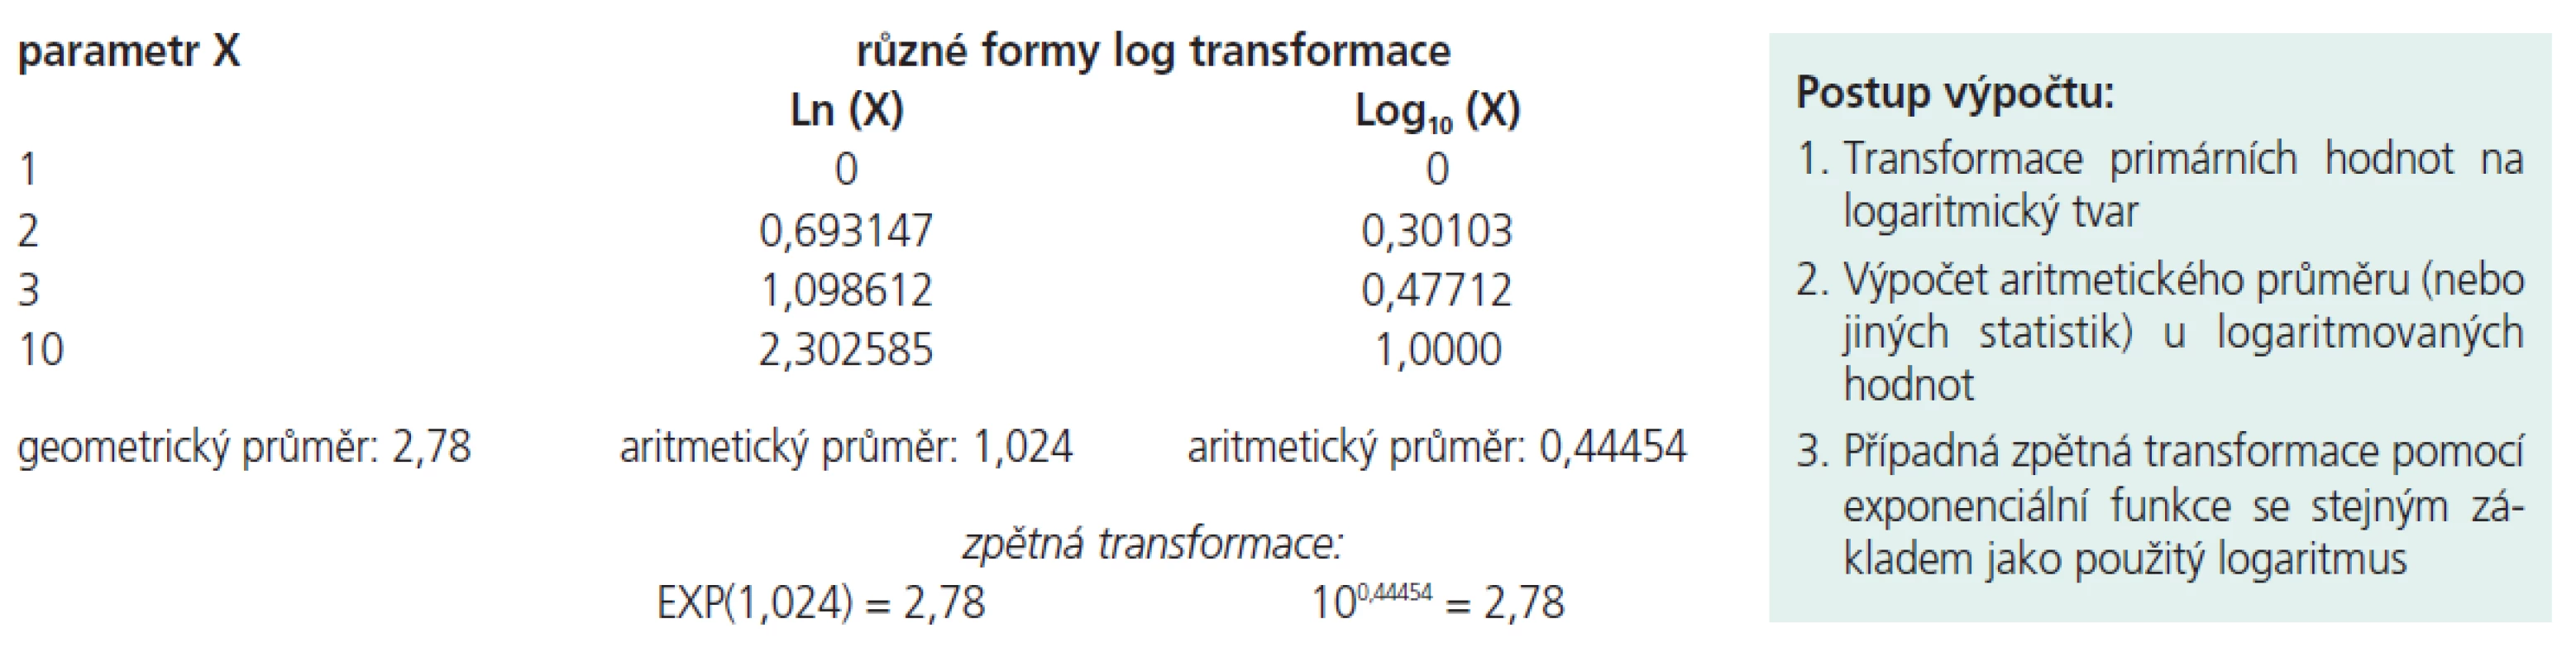 Ukázka výpočtu geometrického průměru s pomocí různých typů logaritmické transformace dat.